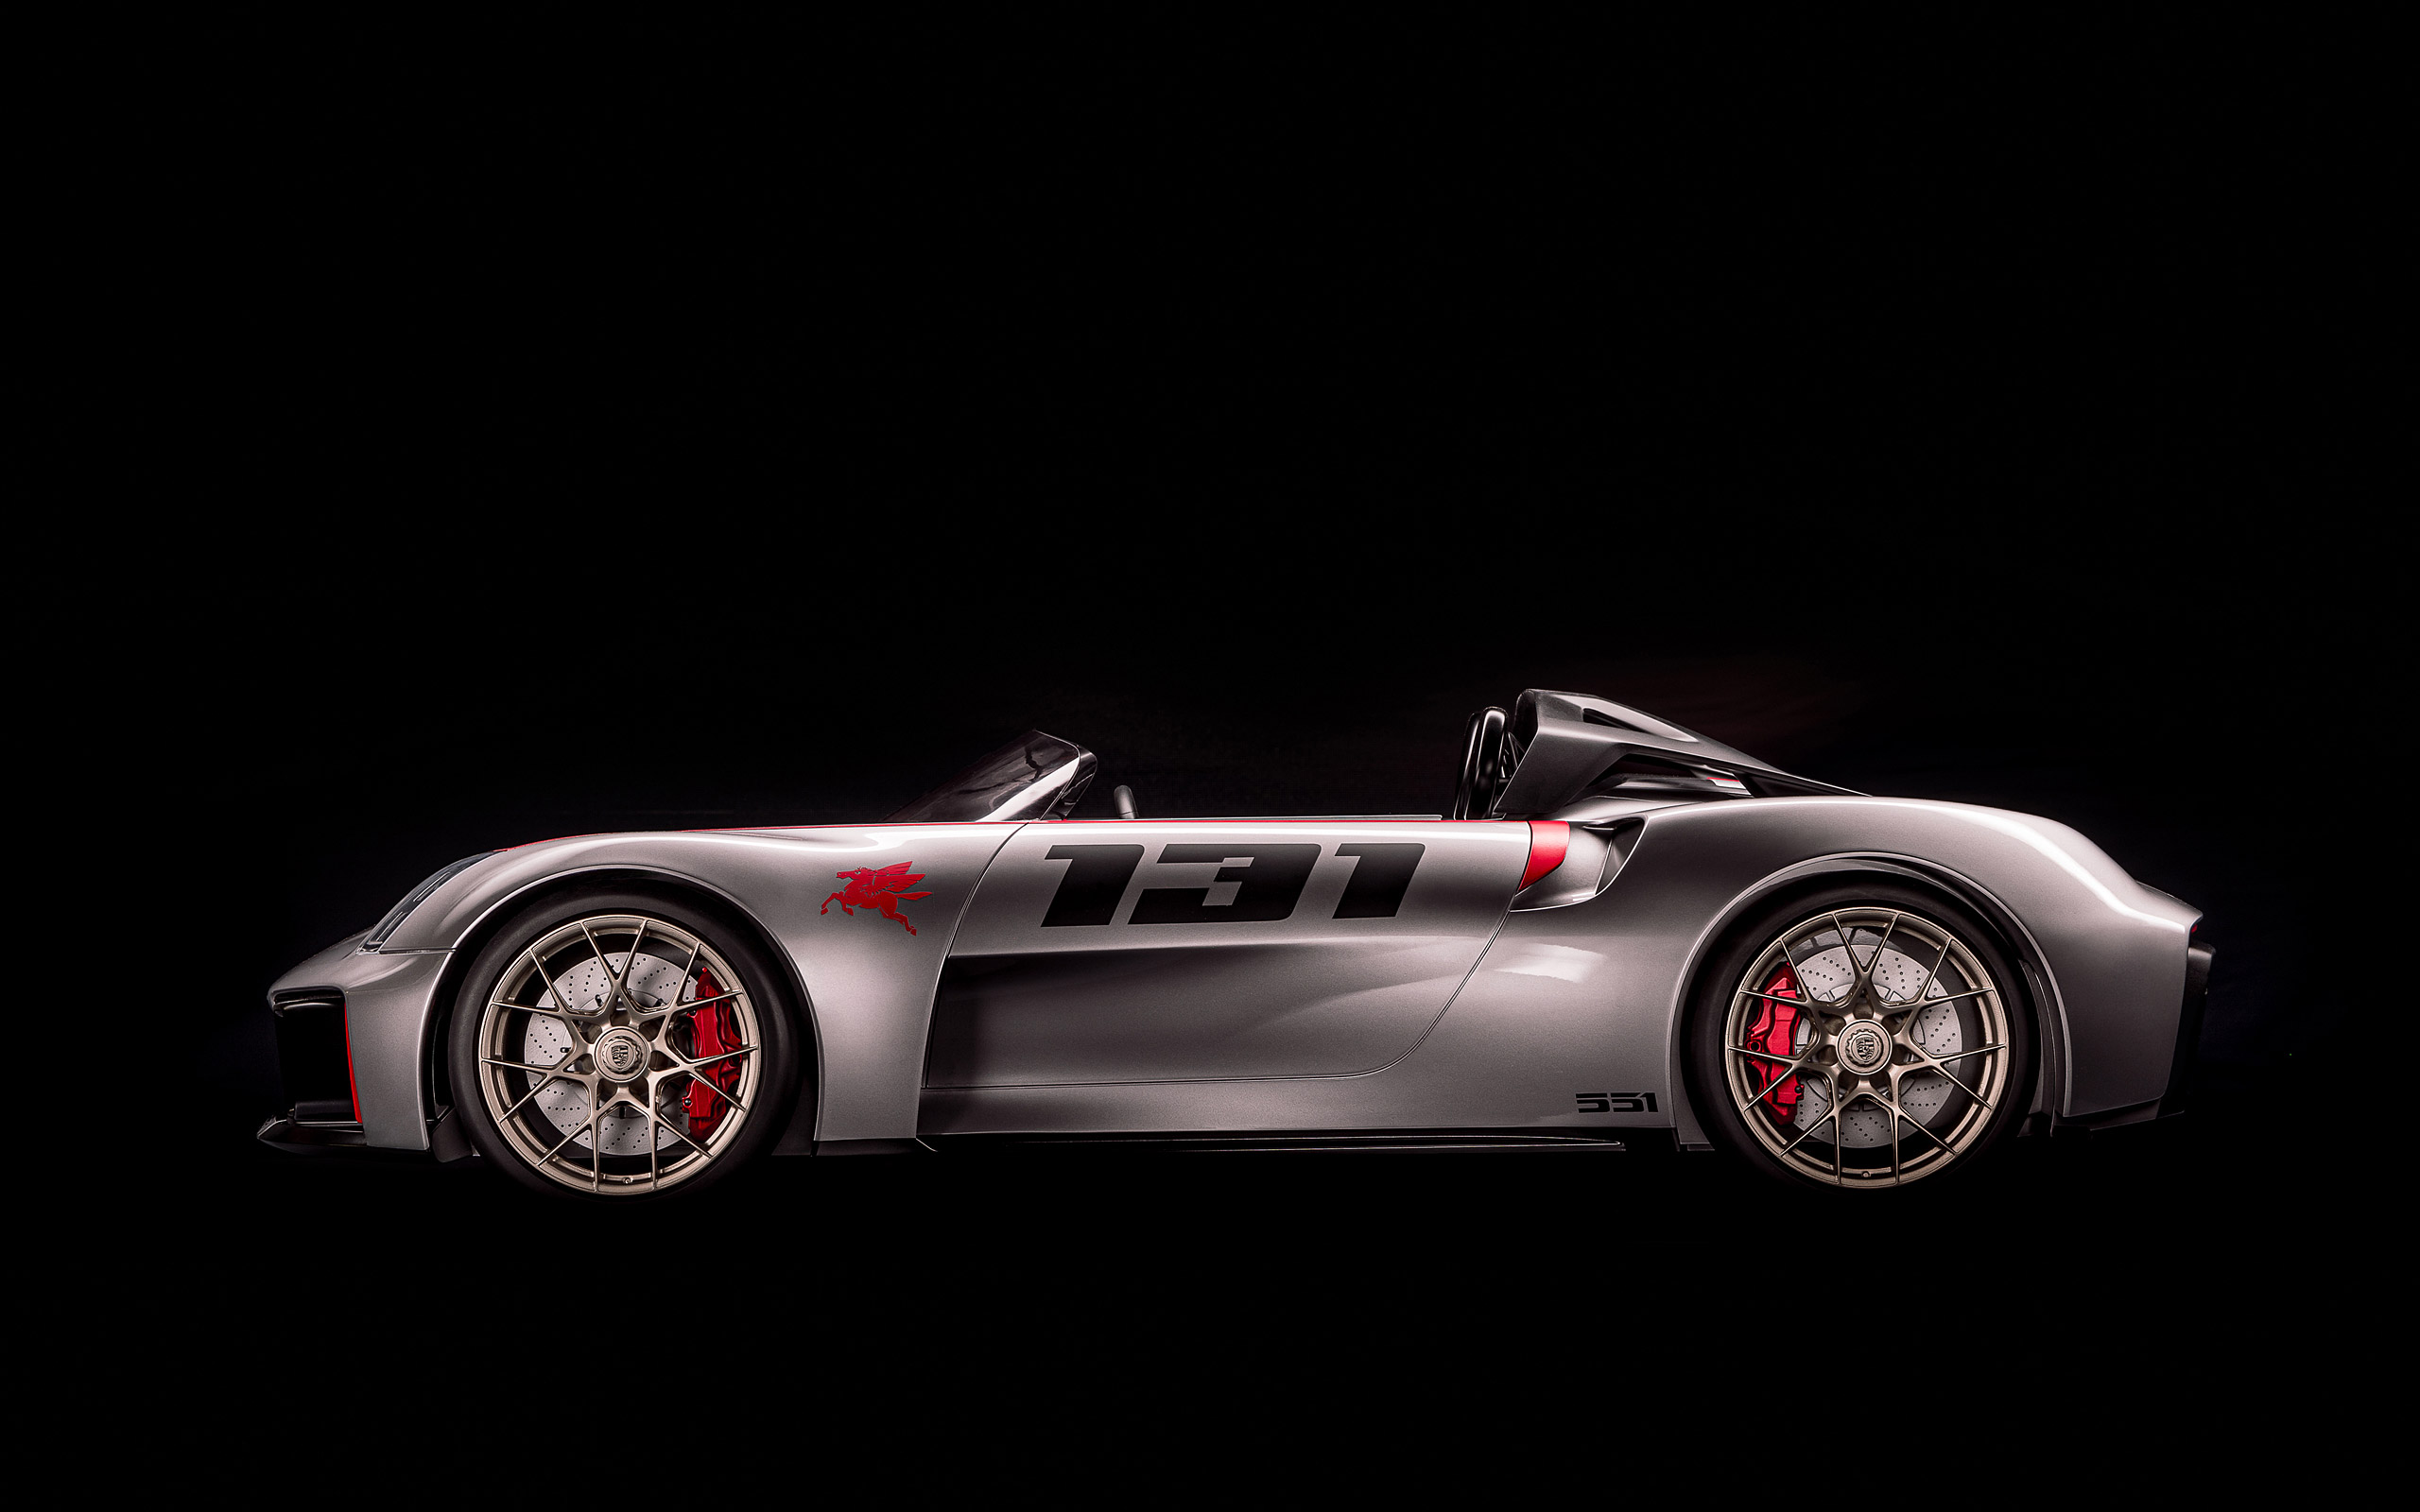  2019 Porsche Vision Spyder Concept Wallpaper.